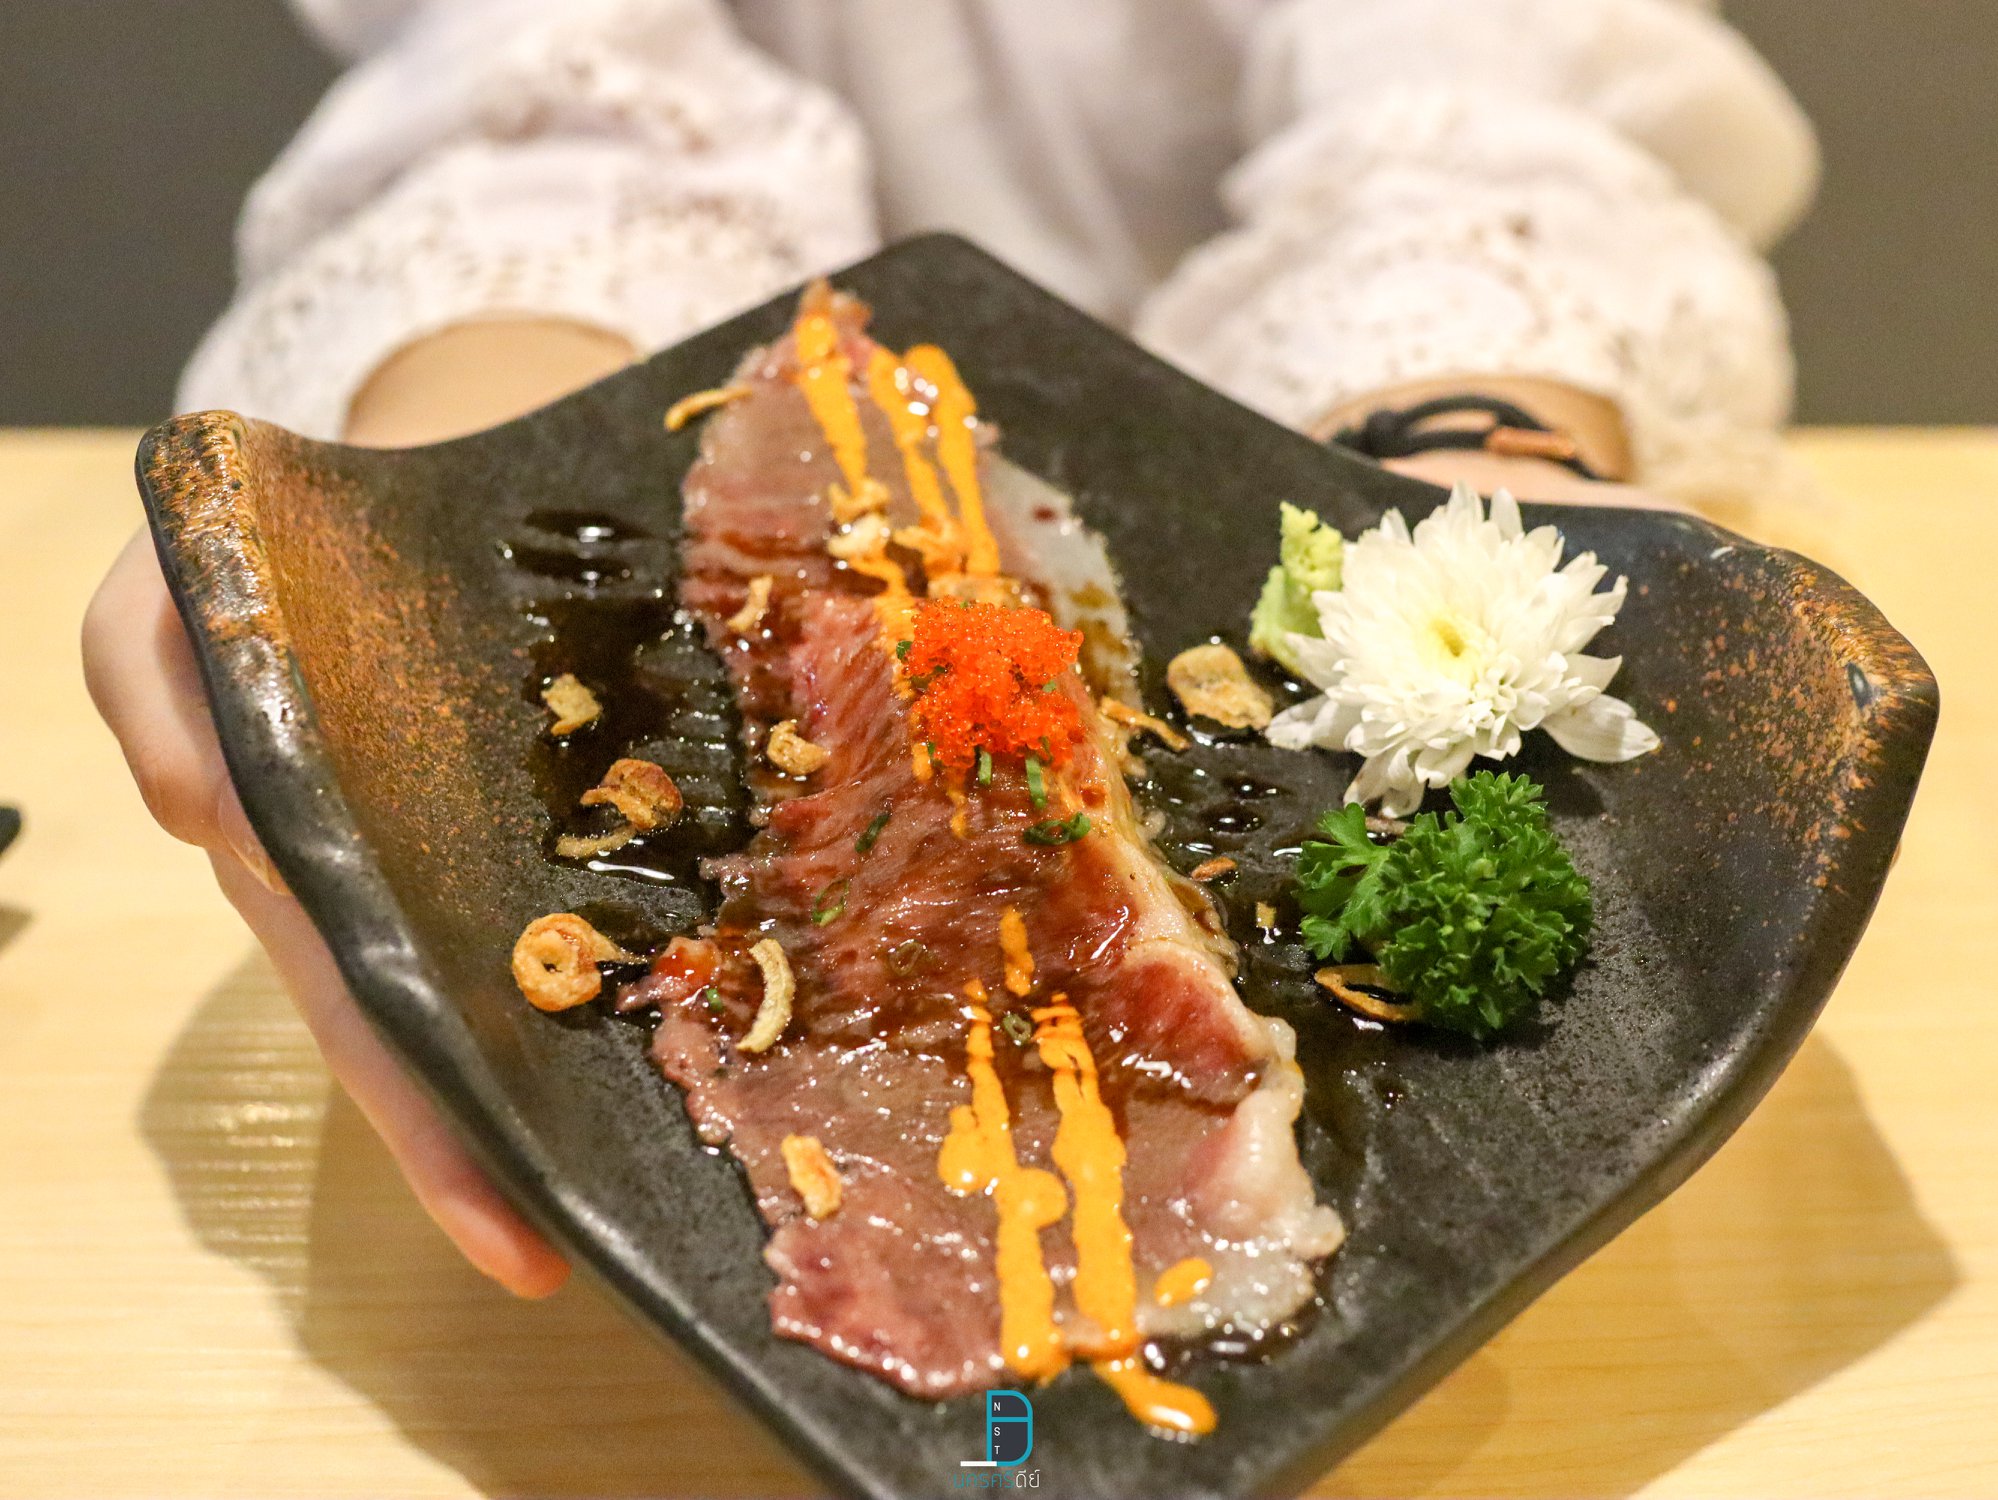  ซูชิเนื้อวากิวฟินนนนน-นุ่มละลายในปากจริงๆครับ hatyaisasimi,ของกิน,หาดใหญ่ซาซิมิ,ร้านอาหารญี่ปุ่น,อร่อย,จุดเช็คอิน